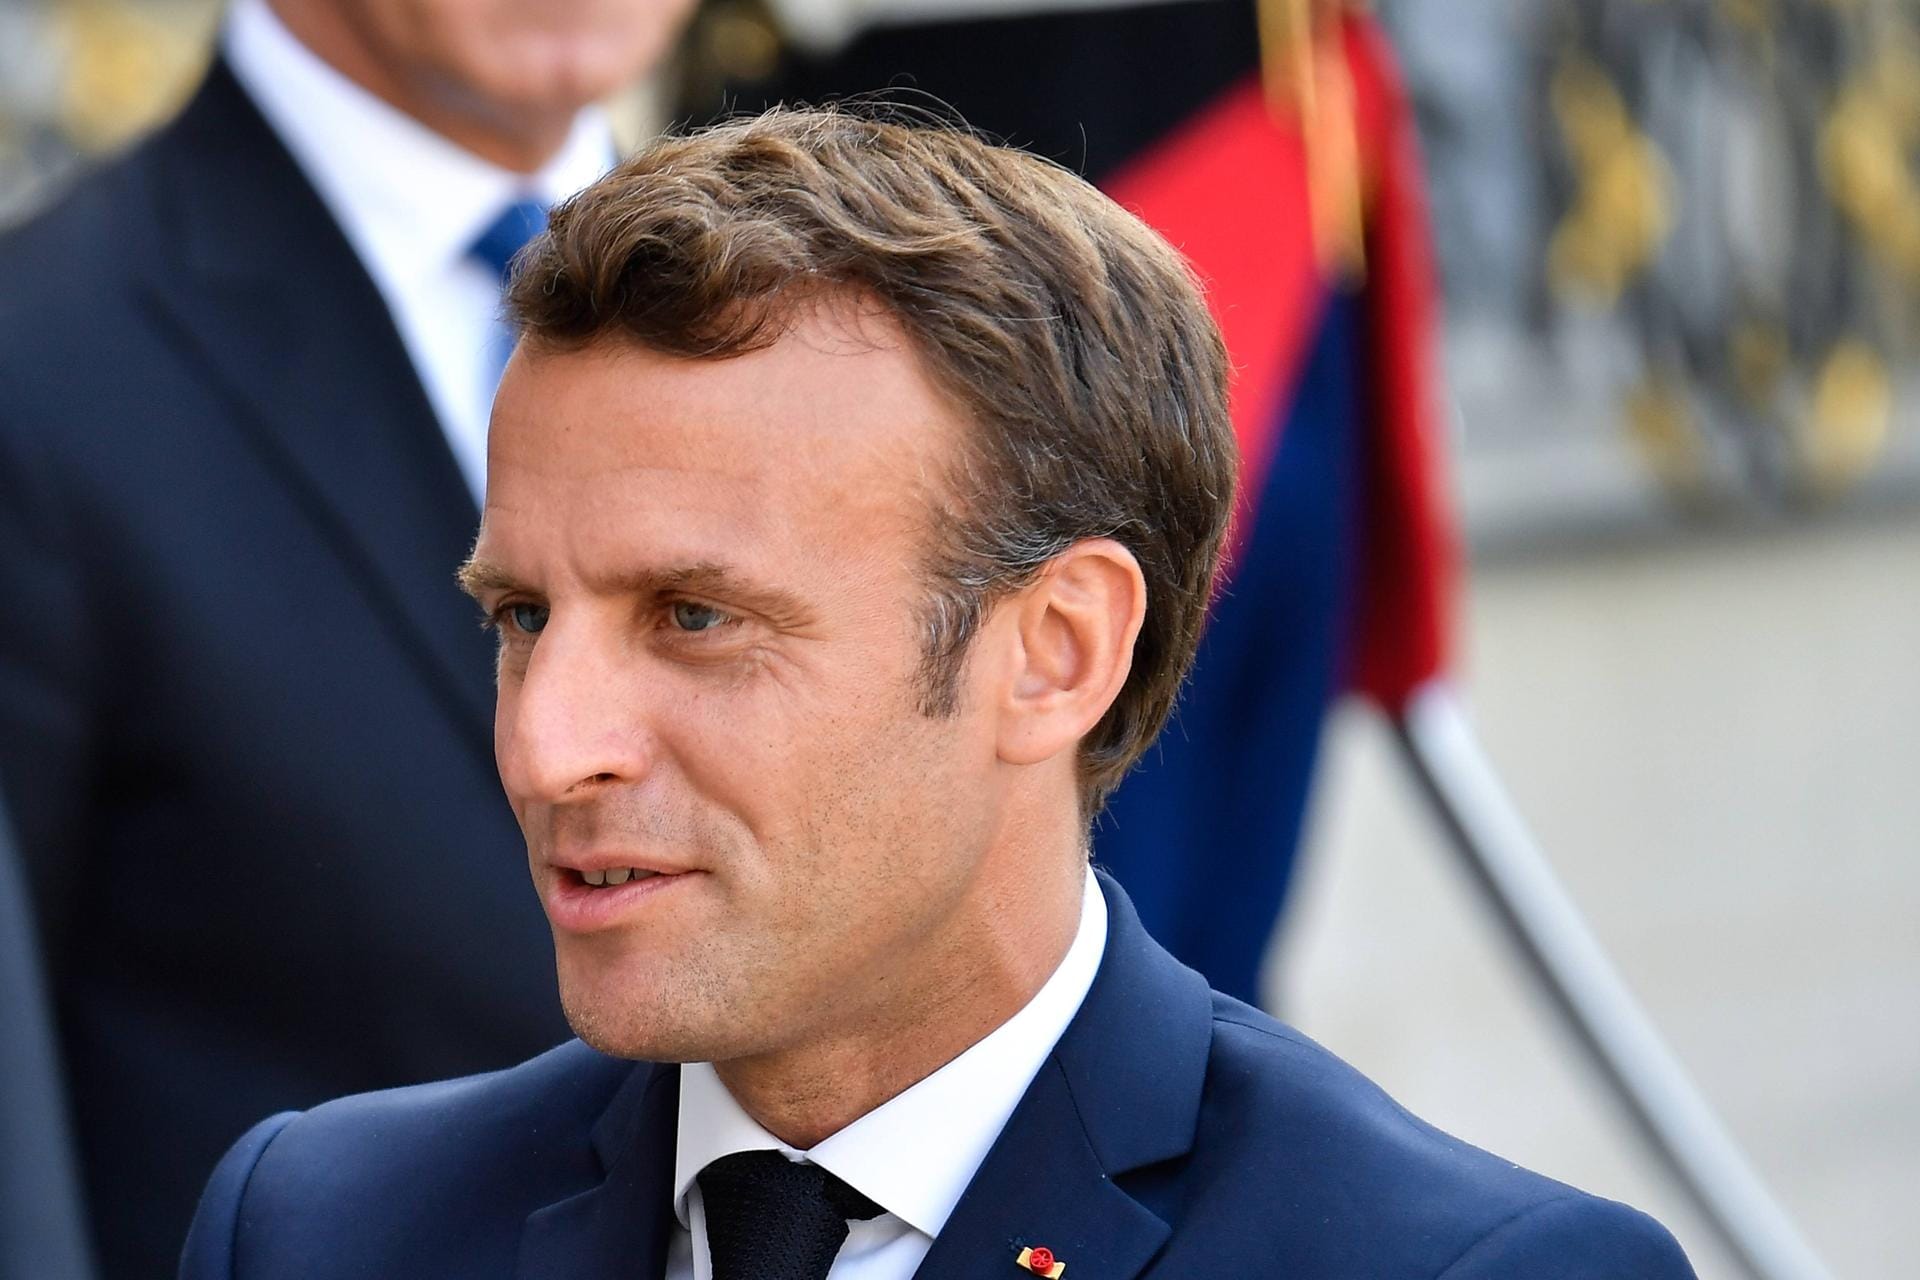 "Heute hat Europa ein Gesicht", sagte Frankreichs Präsident Emmanuel Macron zu der Wahl von der Leyens.